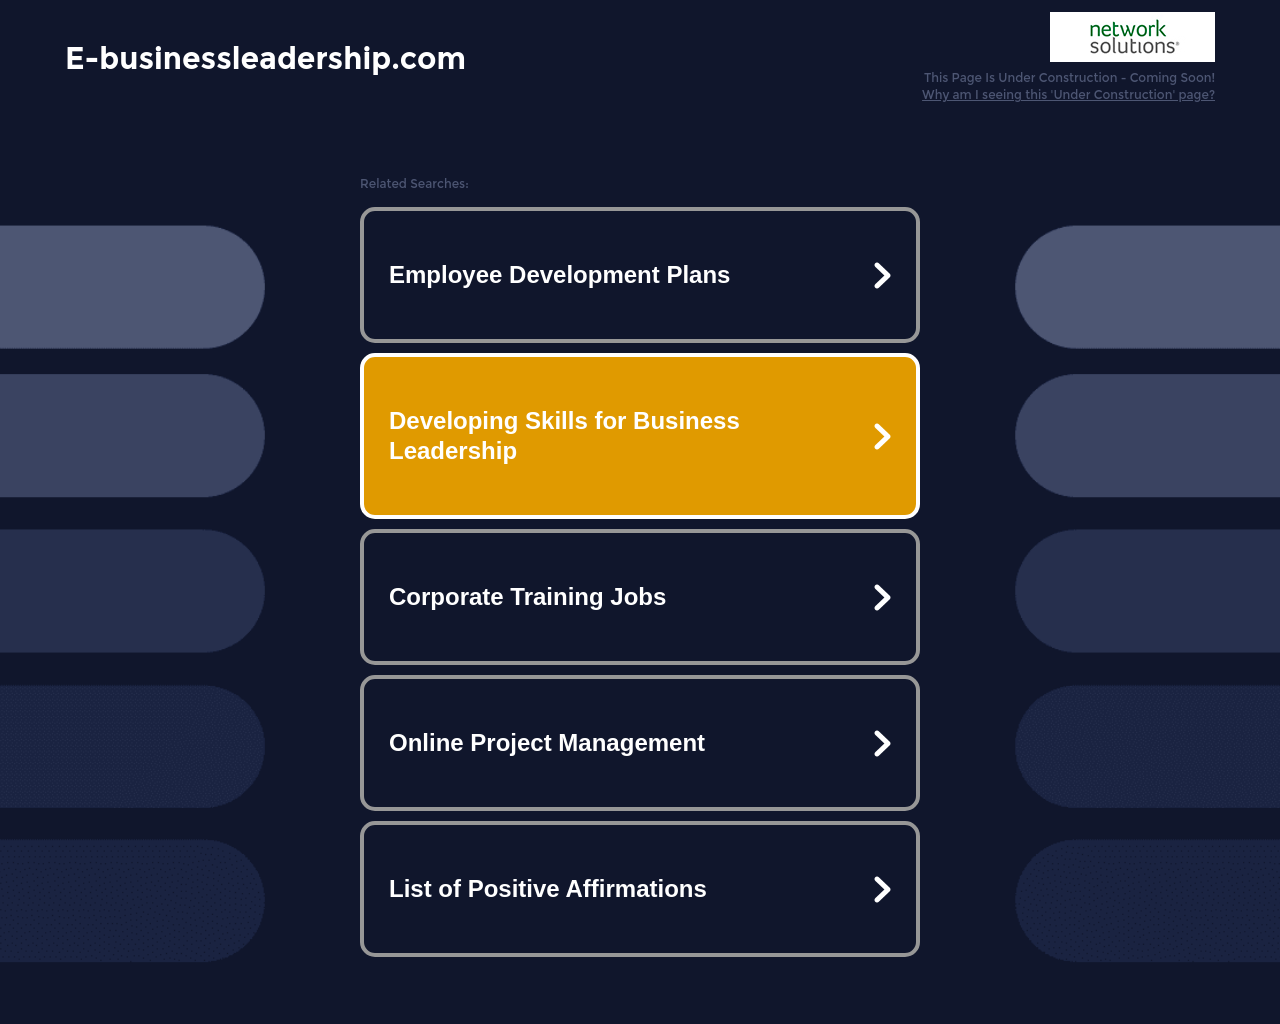 e-businessleadership.com